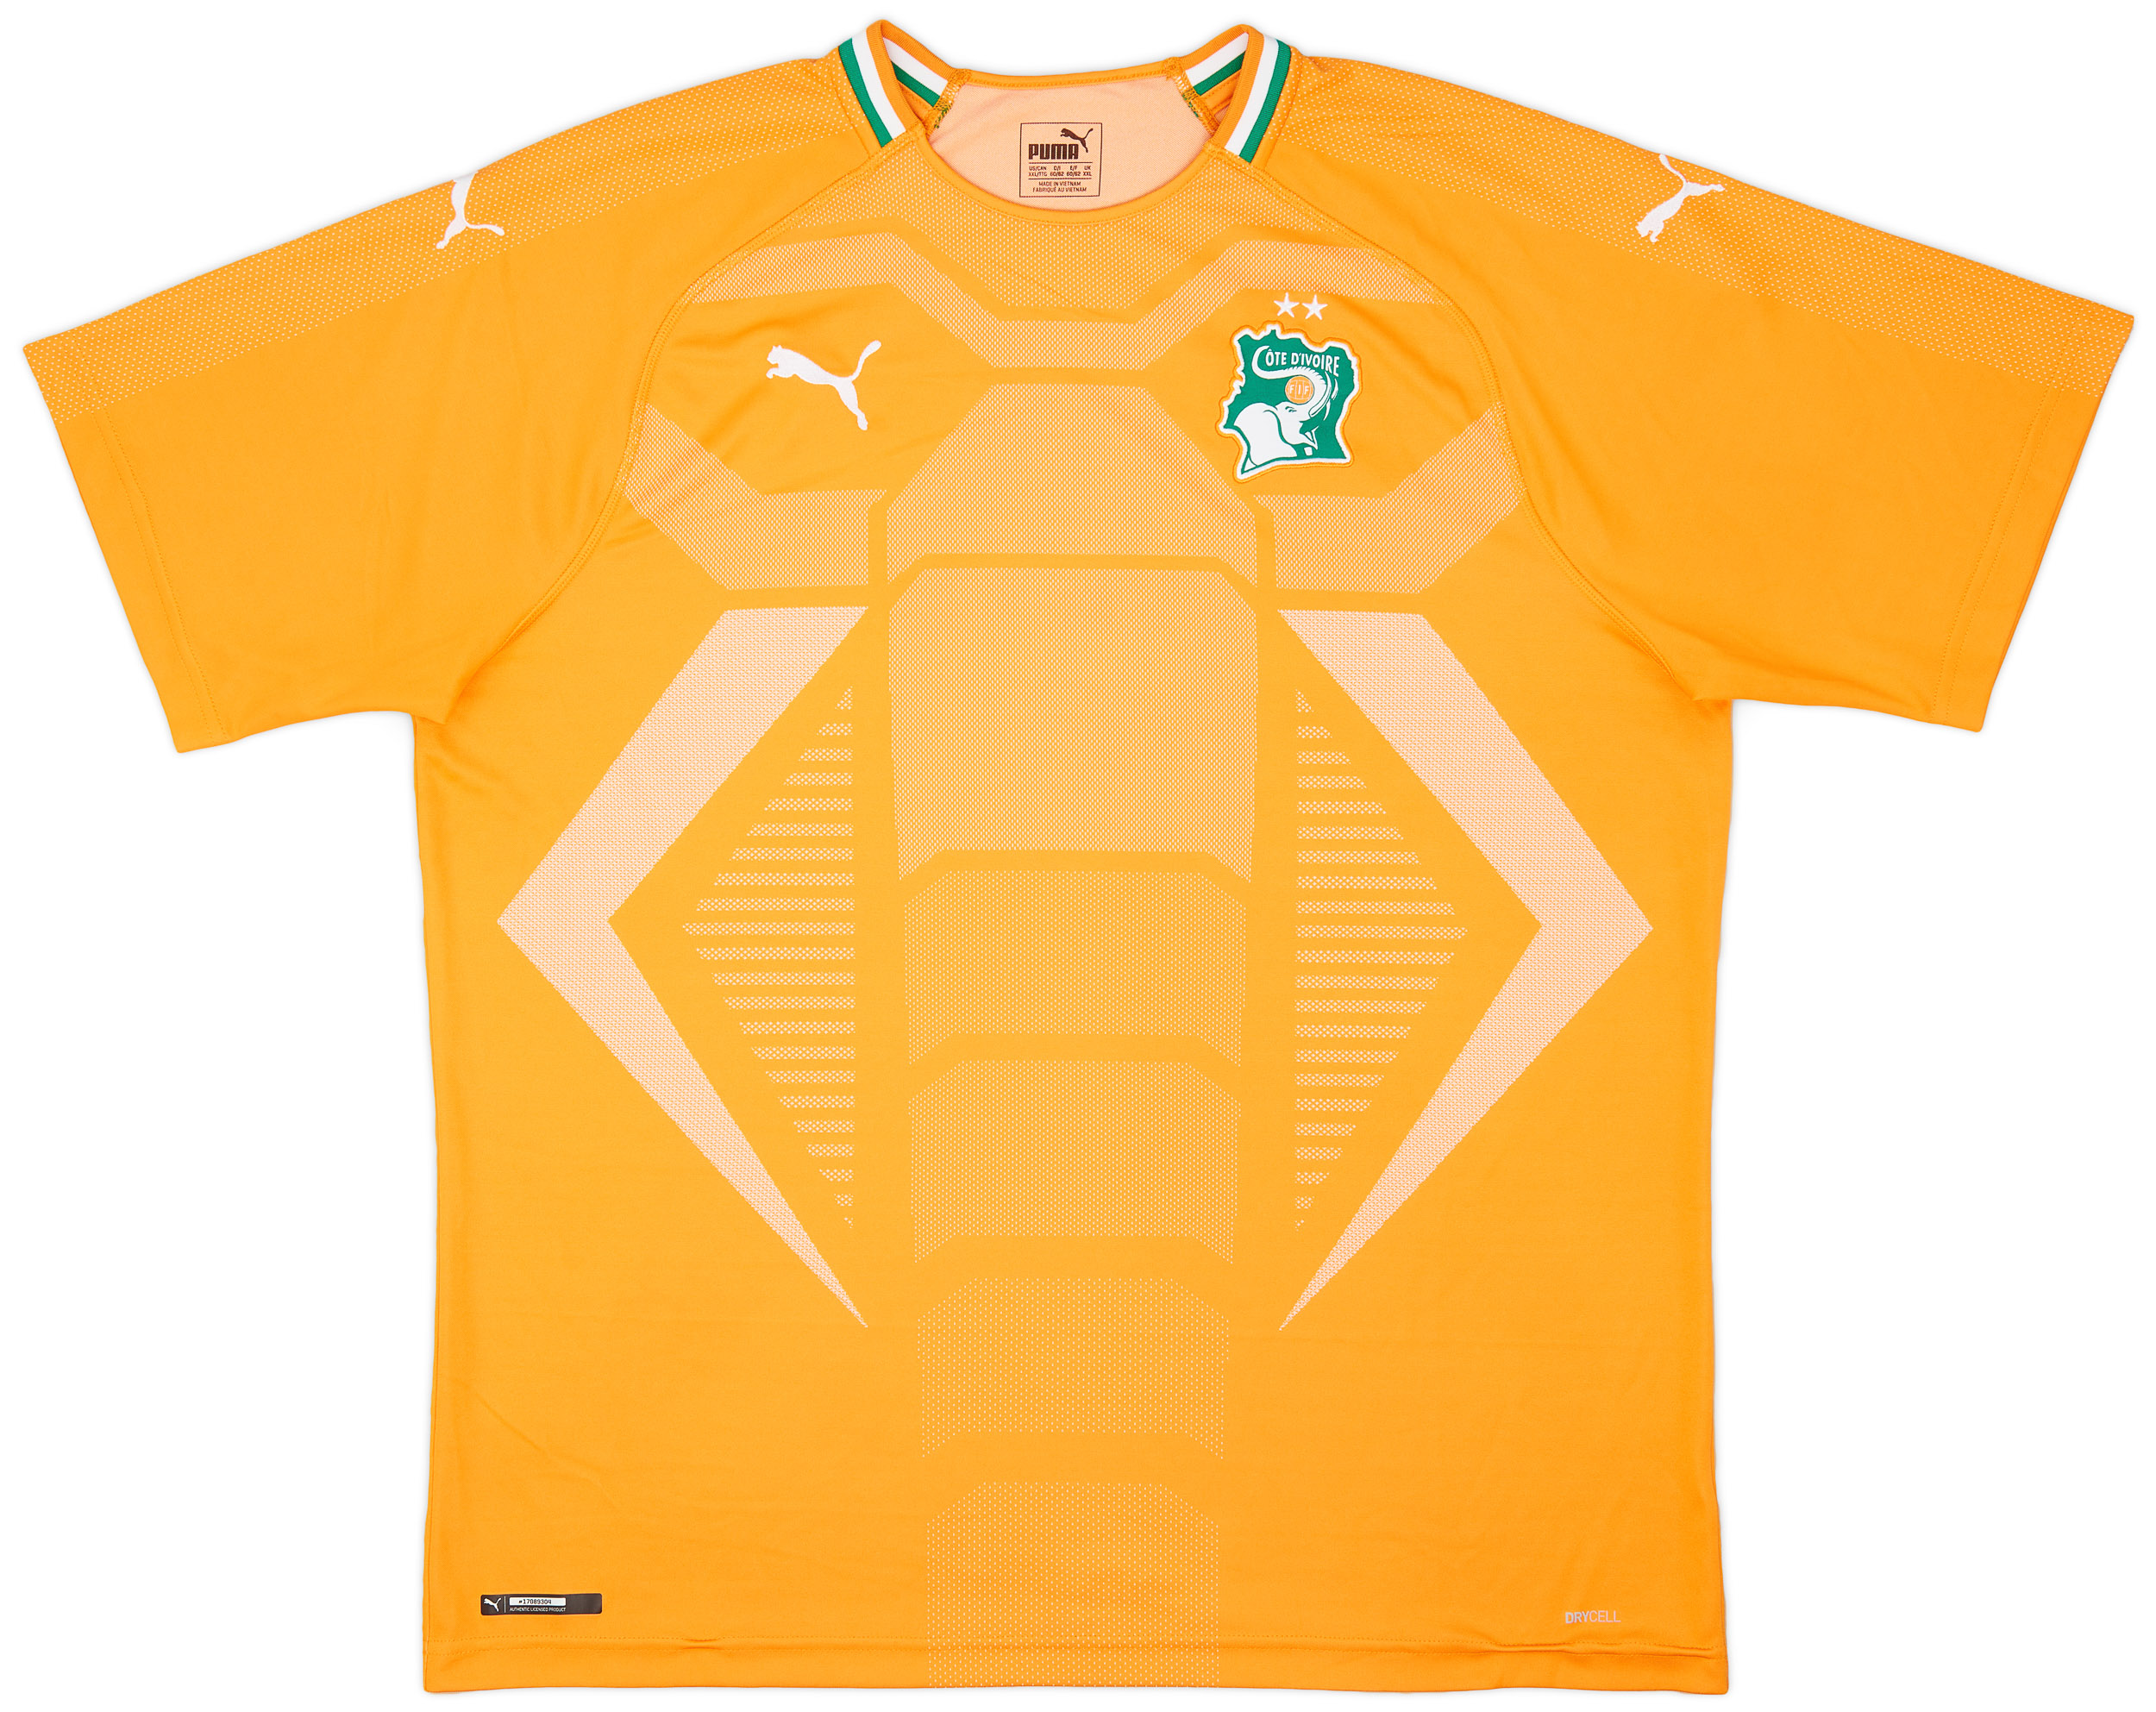 2019-20 Ivory Coast Home Shirt - 9/10 - ()